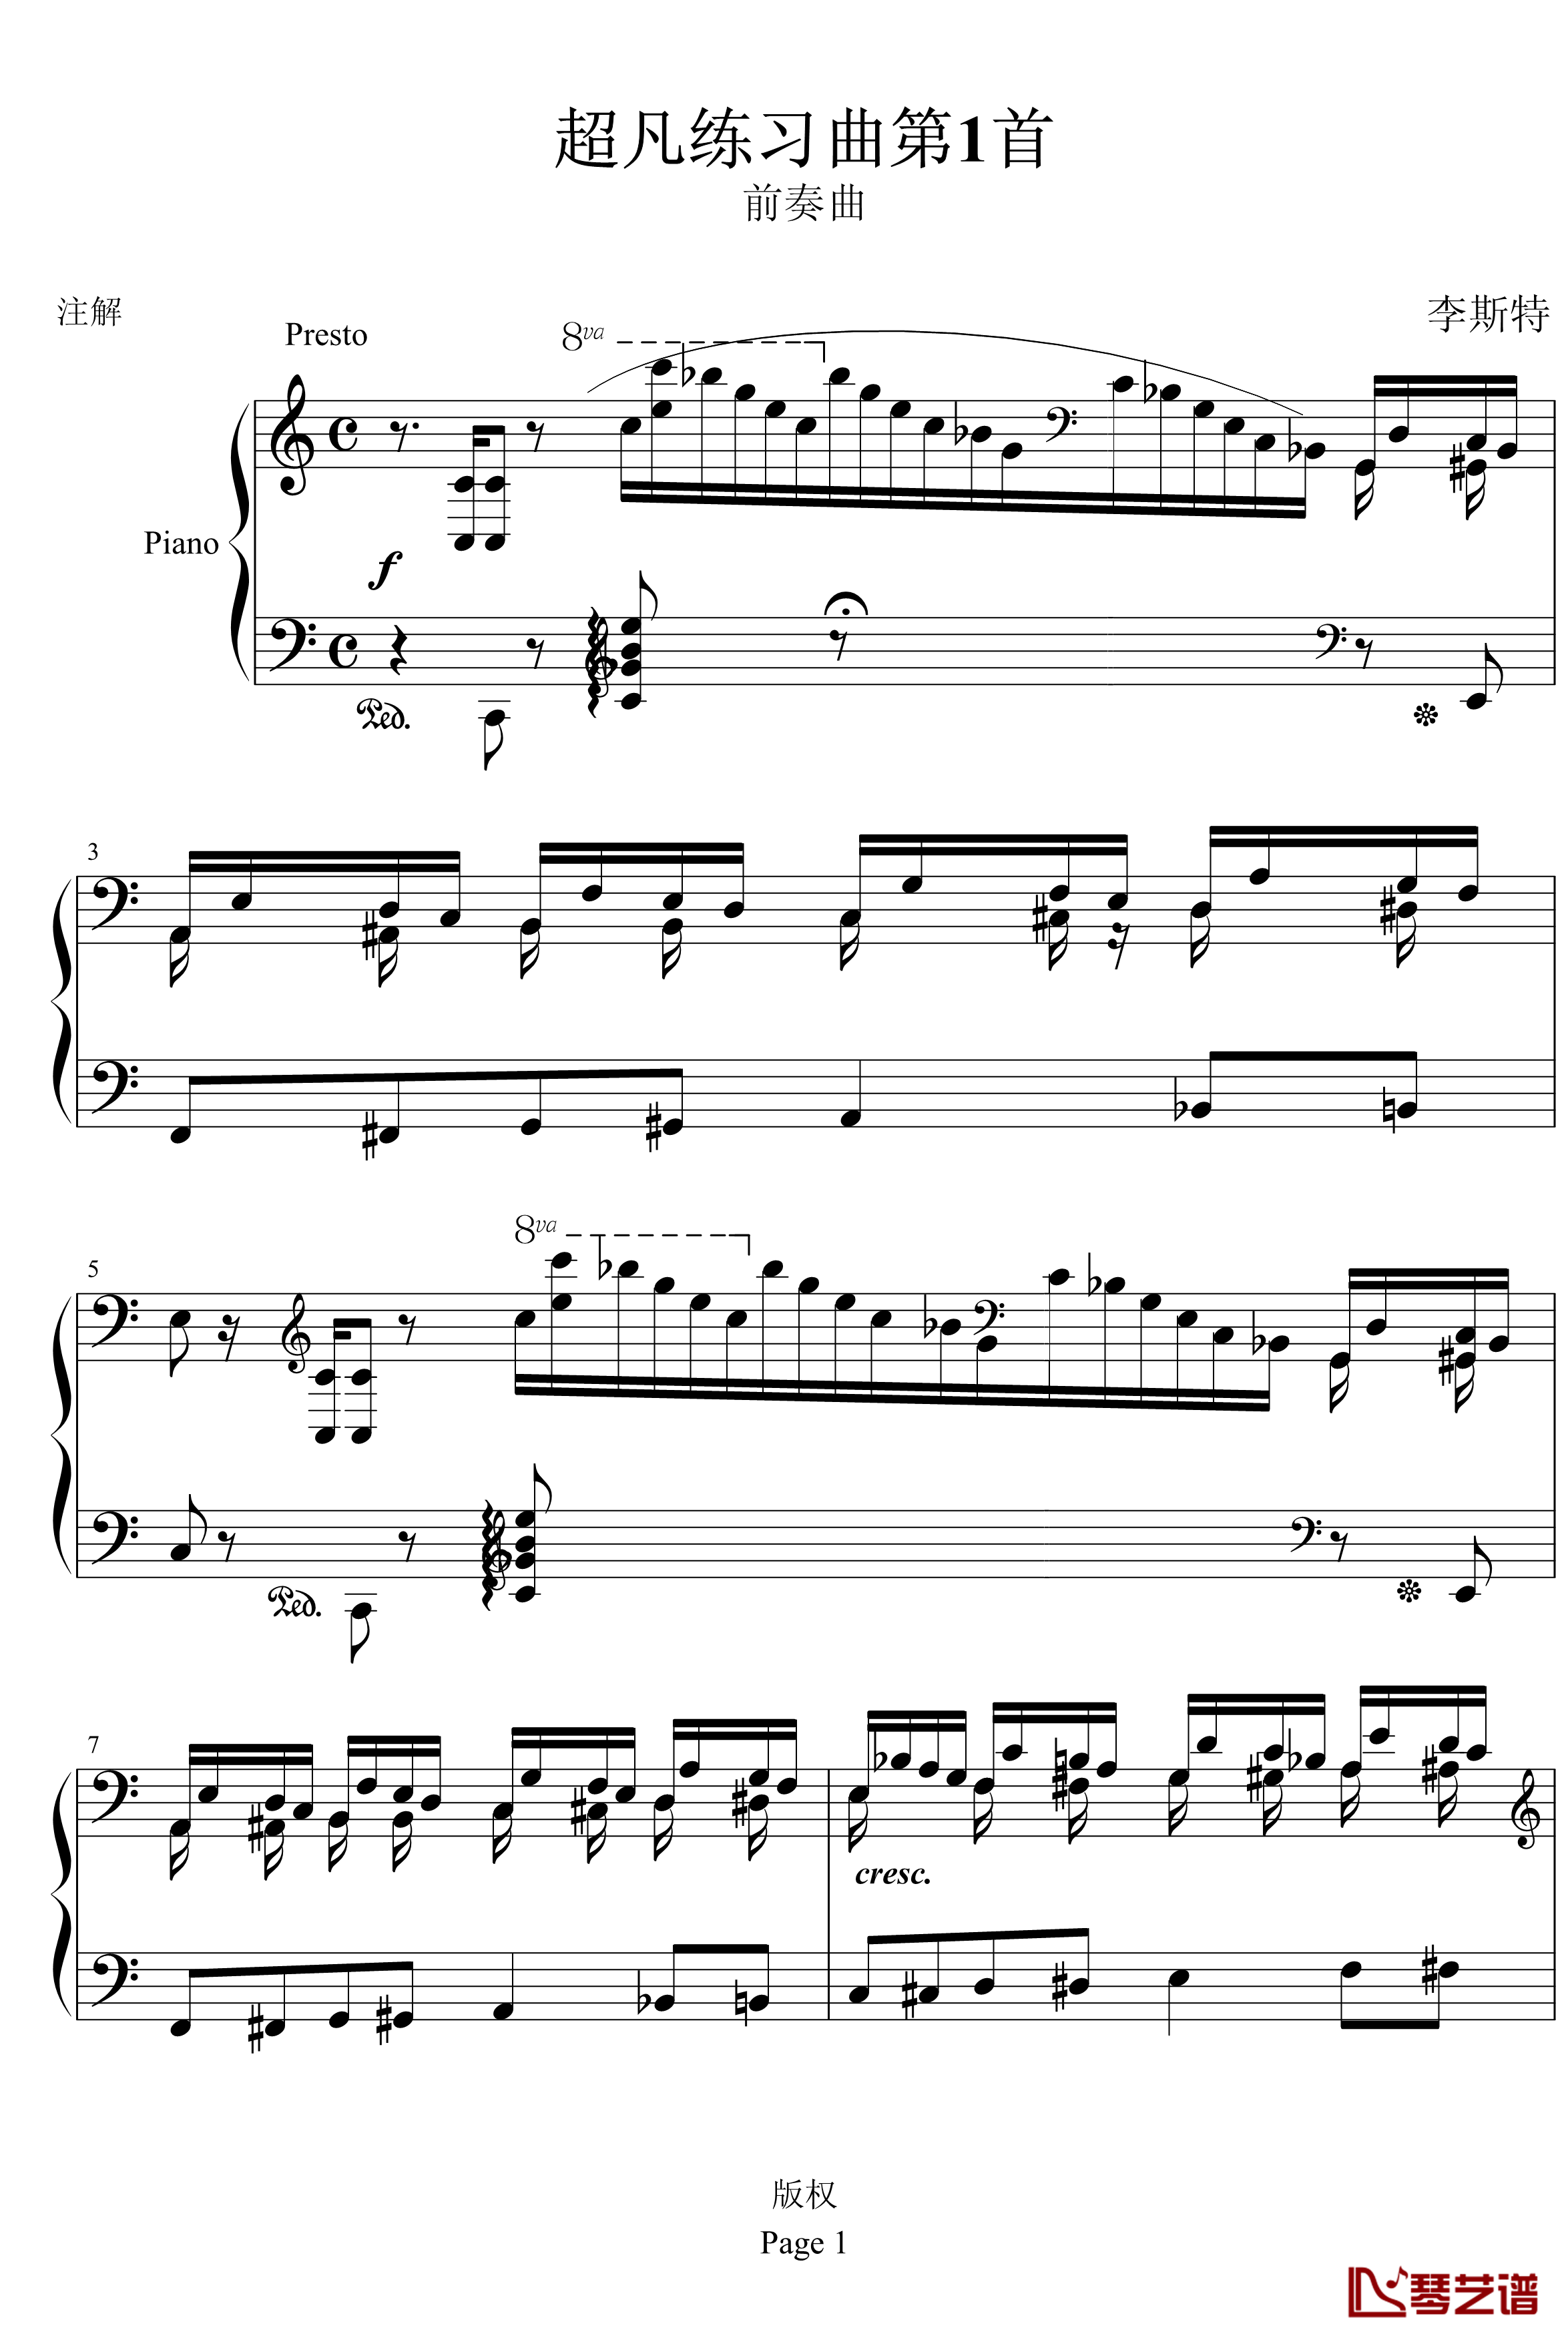 超凡练习曲第1首钢琴谱-李斯特1